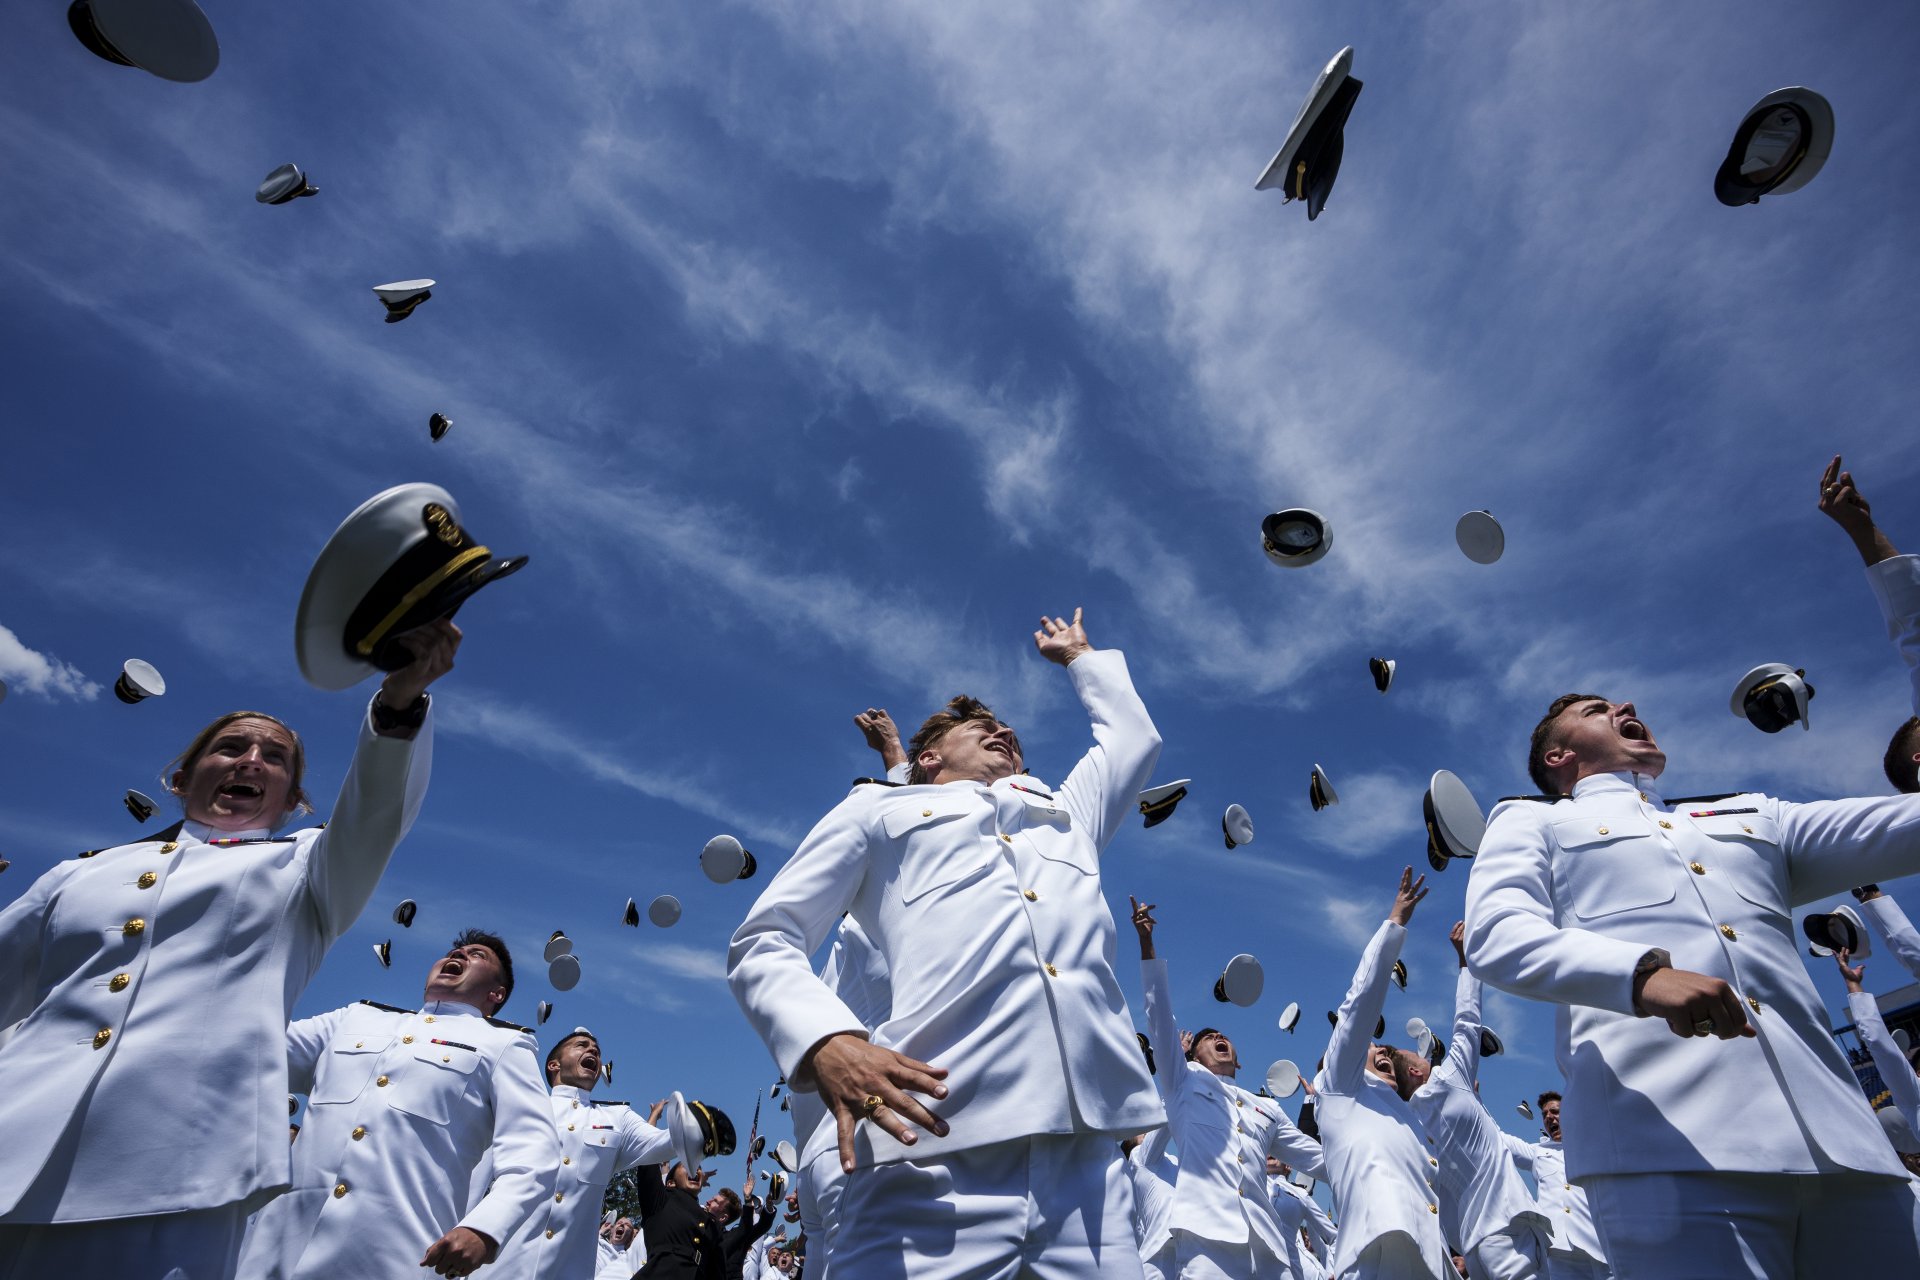 Завършващите мичмани хвърлят шапките си във въздуха по време на церемонията по дипломирането и пускането в експлоатация на Военноморската академия на САЩ на 26 май 2023 г. в Анаполис, Мериленд. 